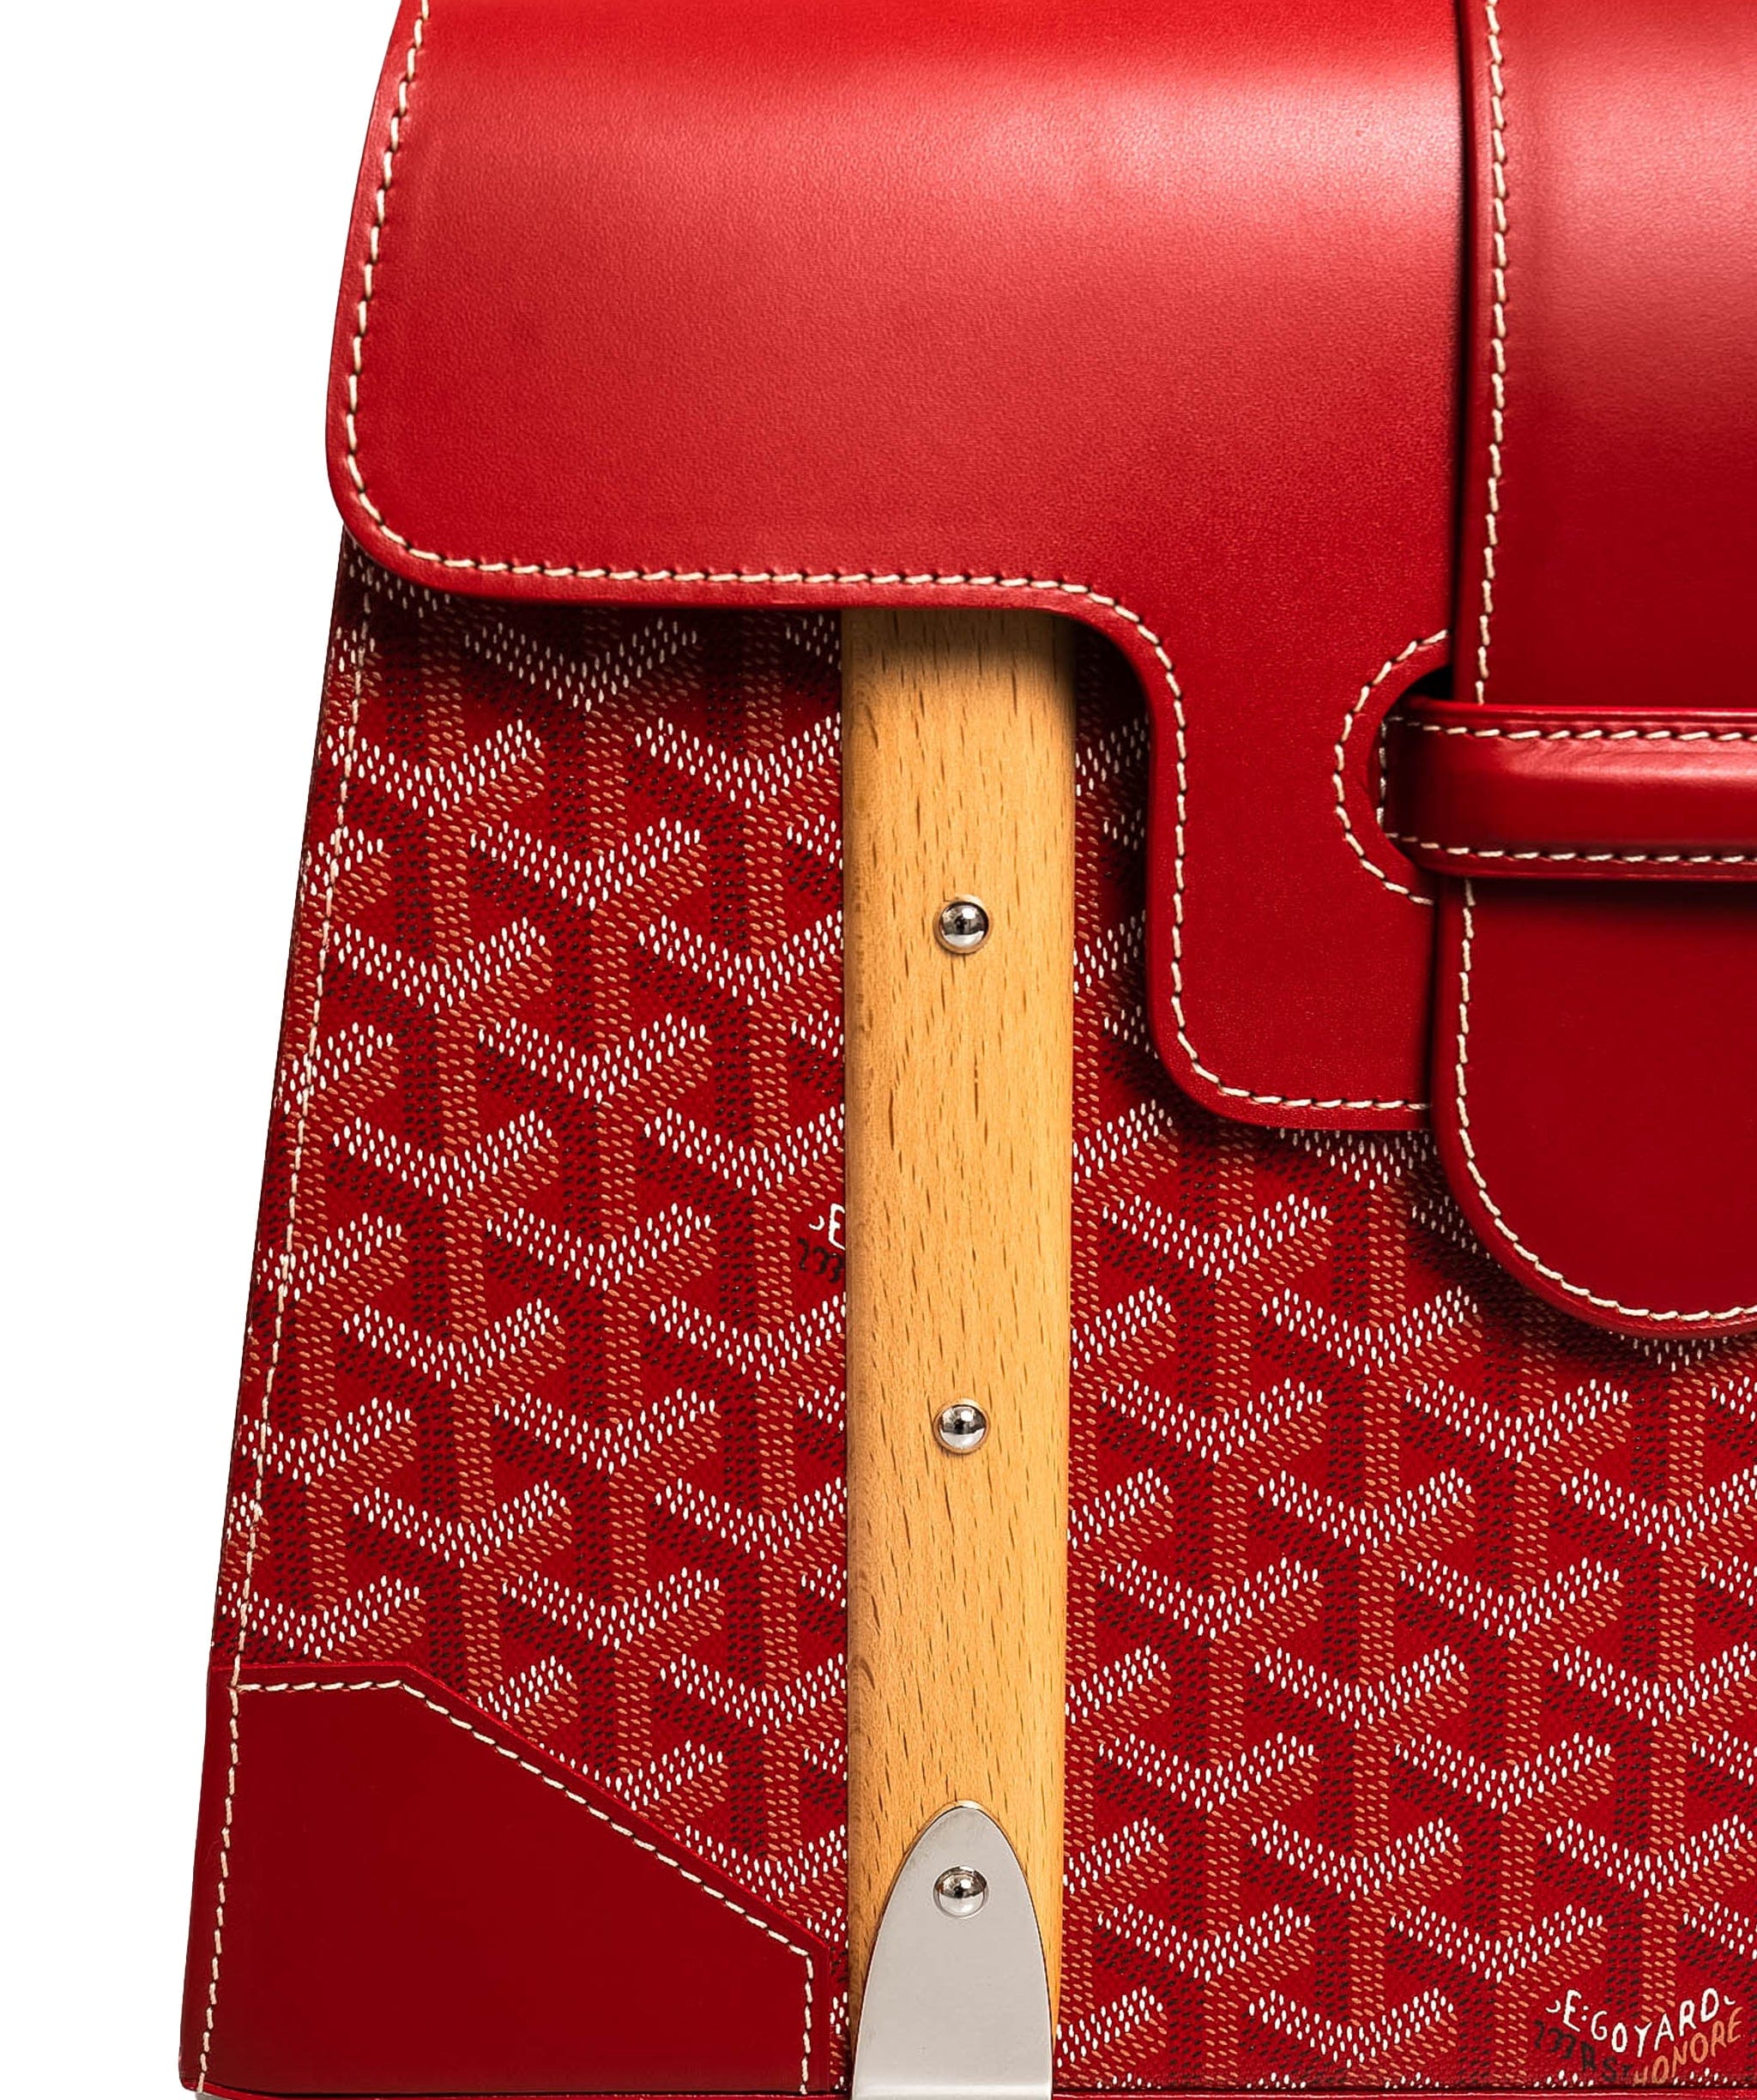 Goyard Goyard Red Leather Saigon Top Handle Bag - AGL1561